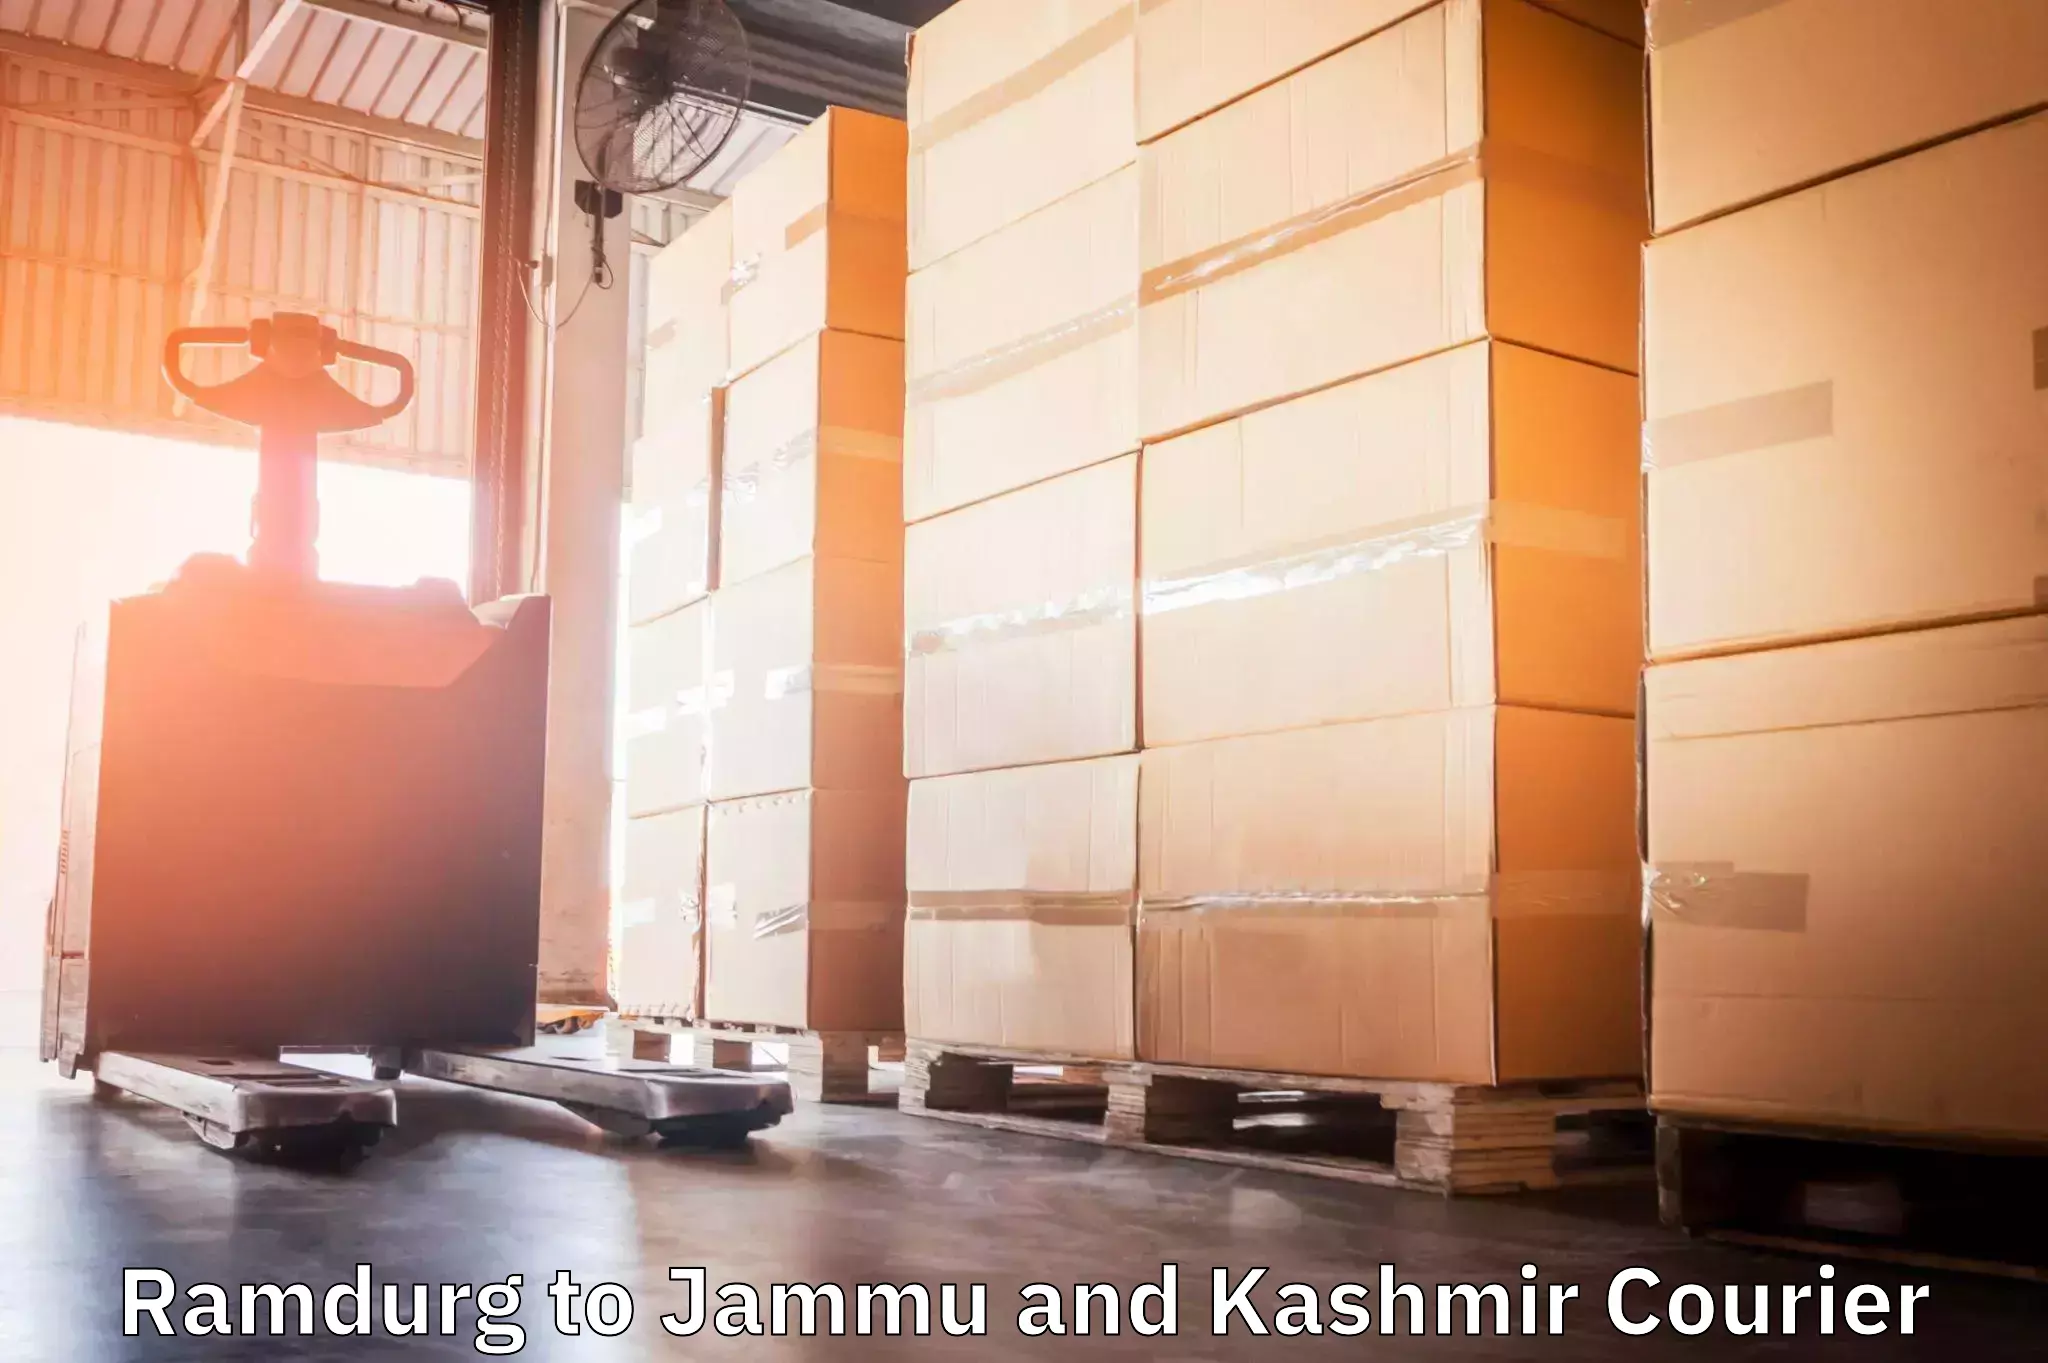 Express logistics Ramdurg to Jammu and Kashmir